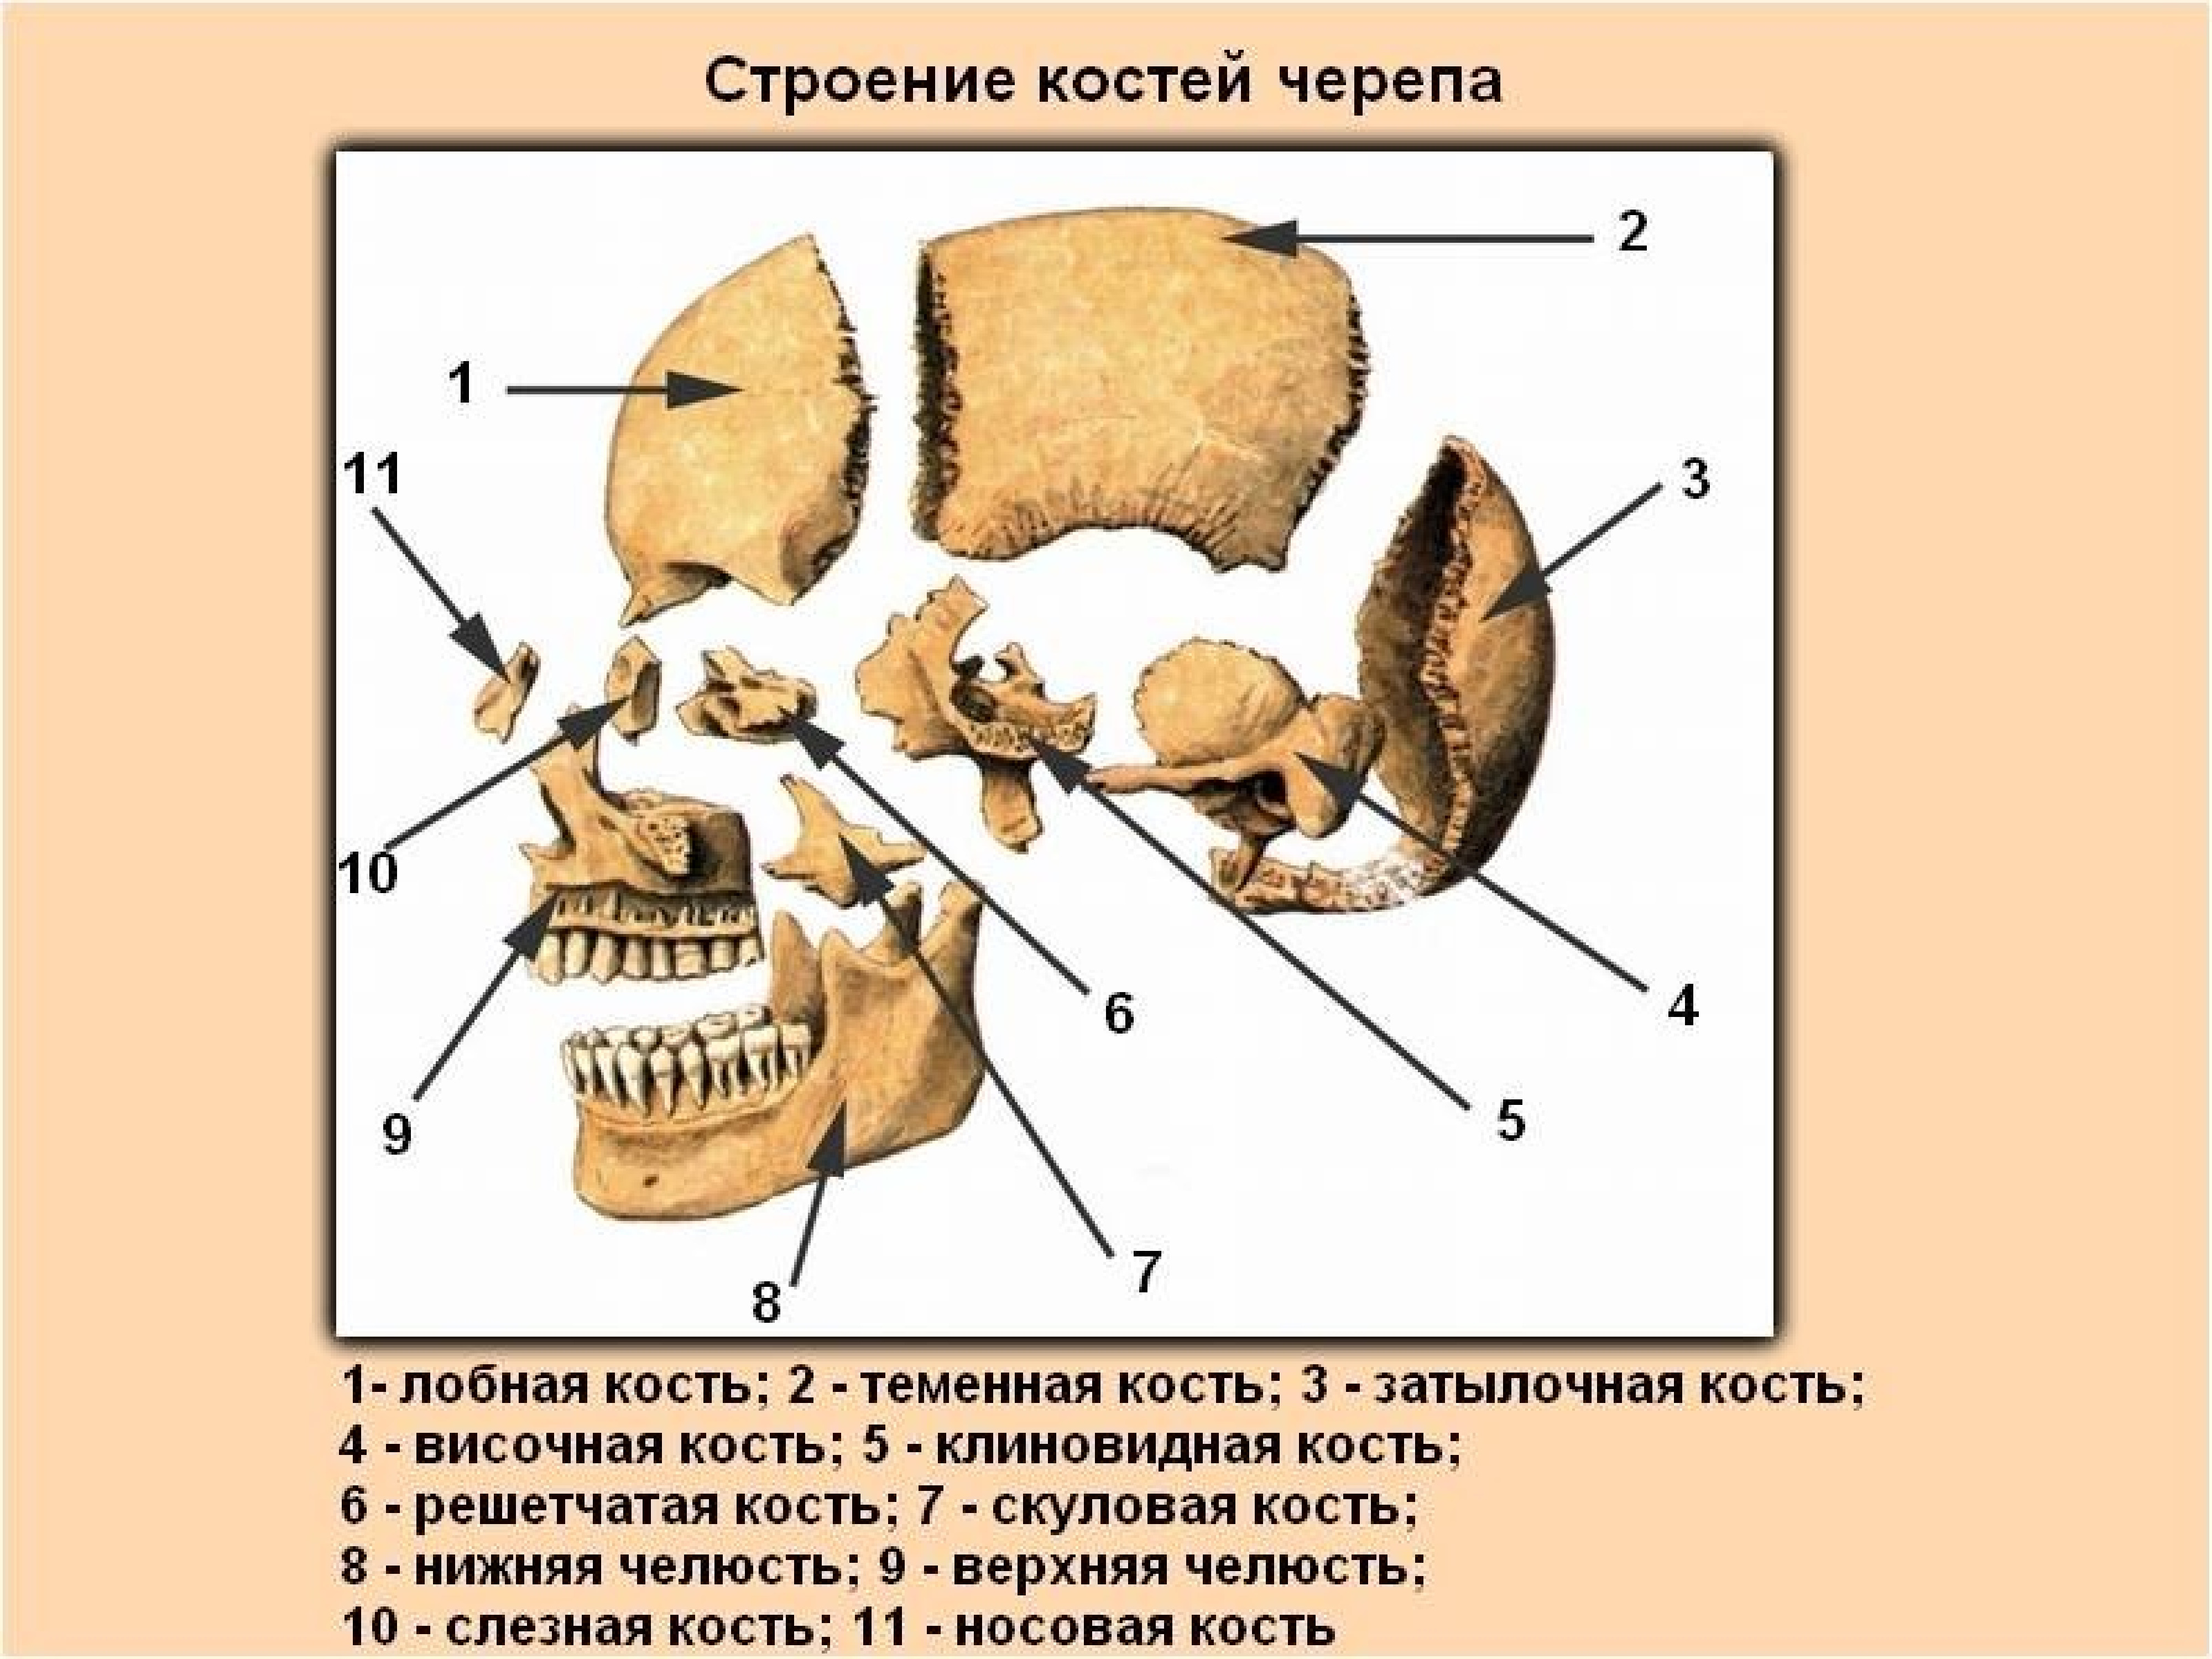 Кости черепа каждая кость. Строение кости черепа человека. Строение костей черепа человека анатомия. Строение костей головы человека. Череп человека с названием костей.